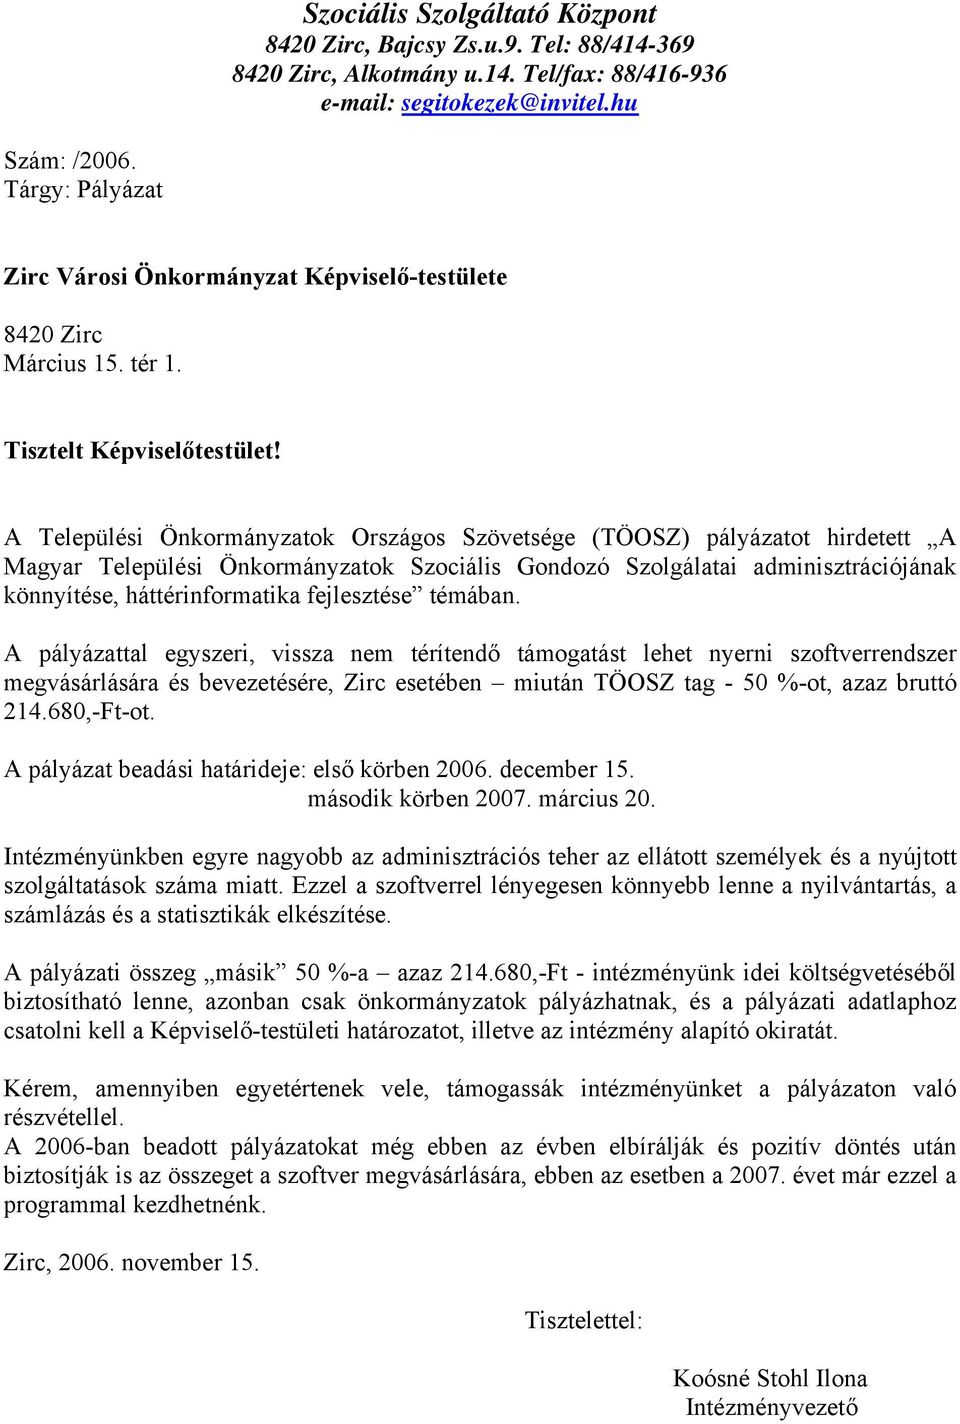 A Települési Önkormányzatok Országos Szövetsége (TÖOSZ) pályázatot hirdetett A Magyar Települési Önkormányzatok Szociális Gondozó Szolgálatai adminisztrációjának könnyítése, háttérinformatika